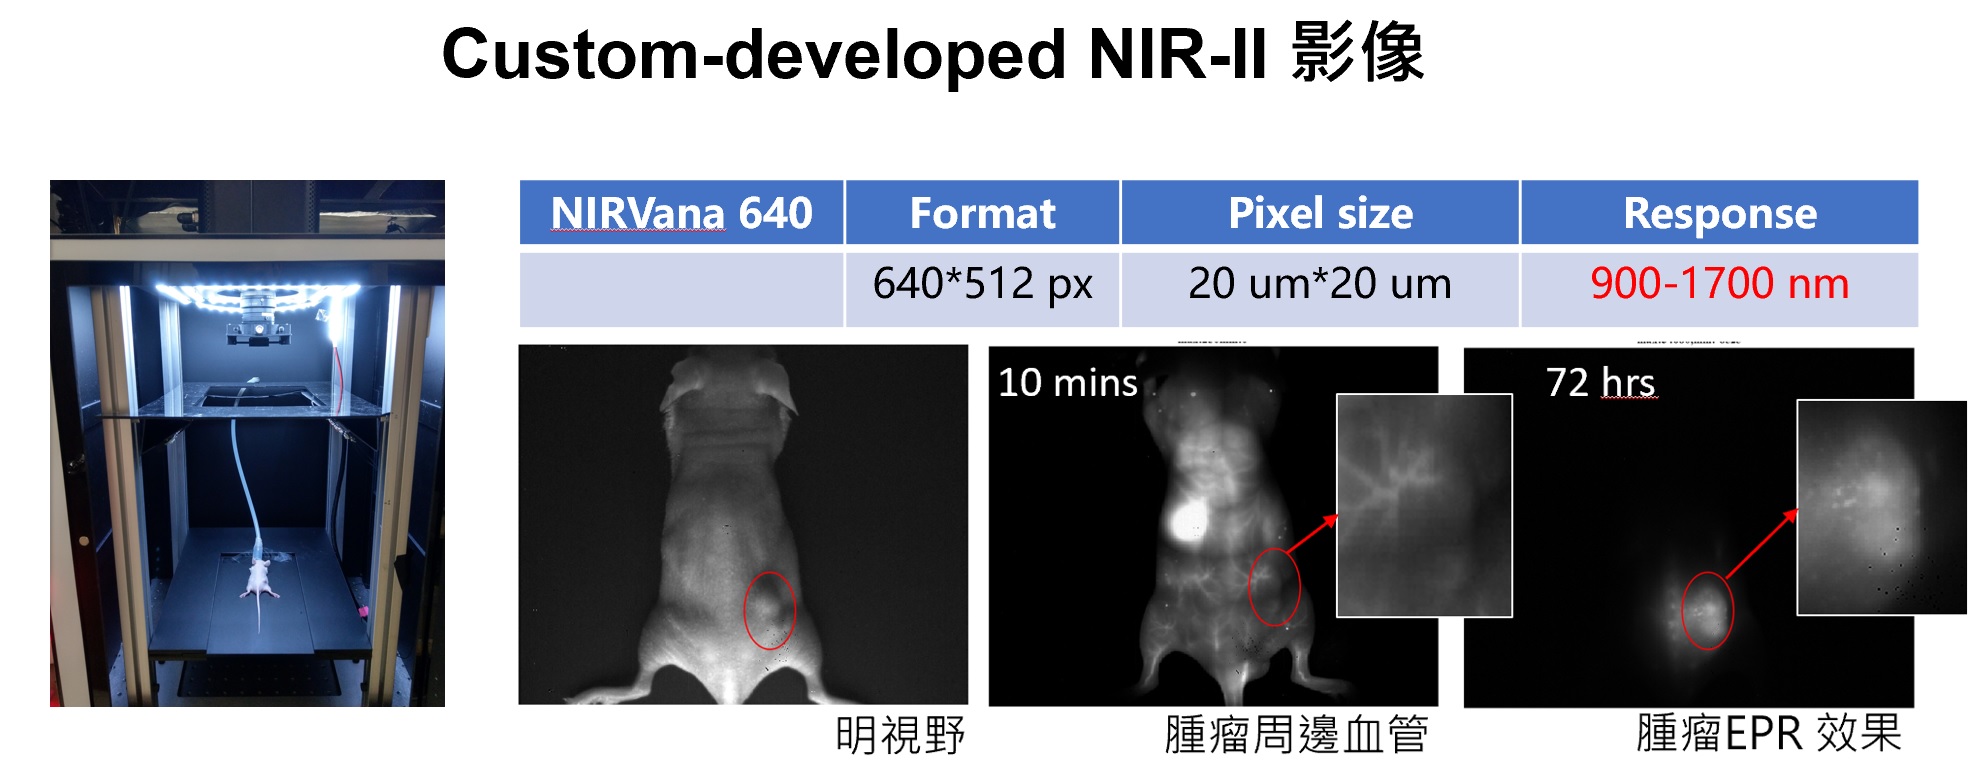 開發尖端NIR-II Pdots奈米複合藥物與多模態 3D 腫瘤影像之精準醫療研究平台